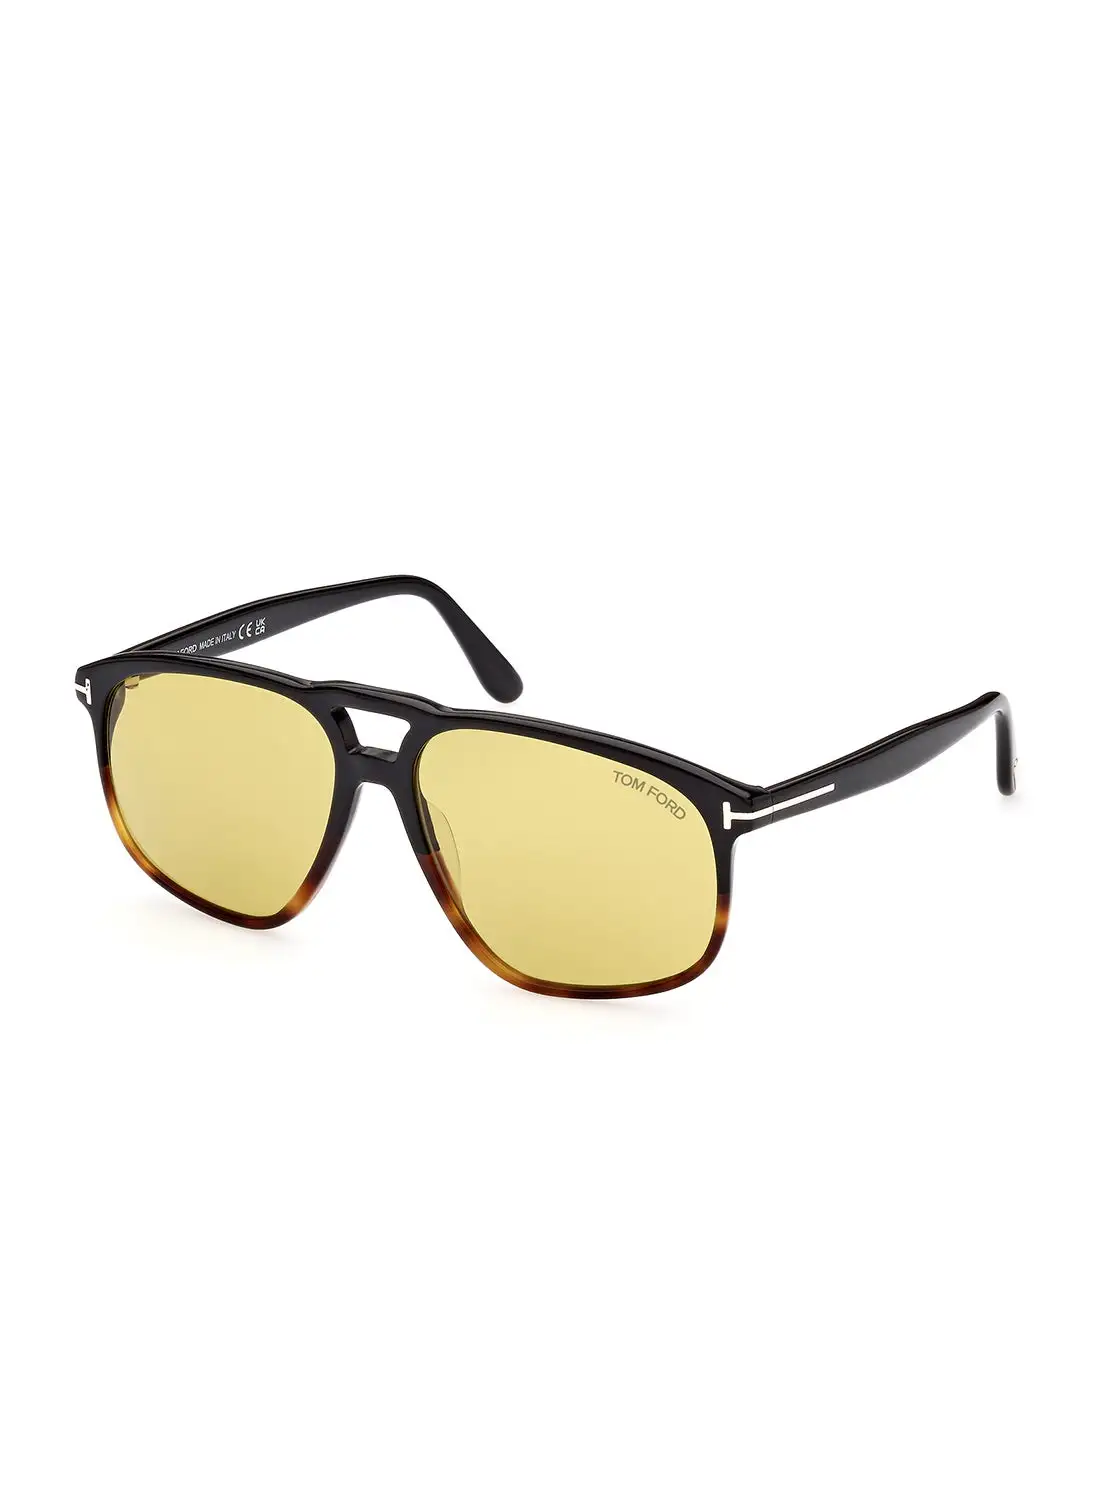 TOM FORD Men's UV Protection Navigator Sunglasses - FT100005E58 - Lens Size: 58 Mm